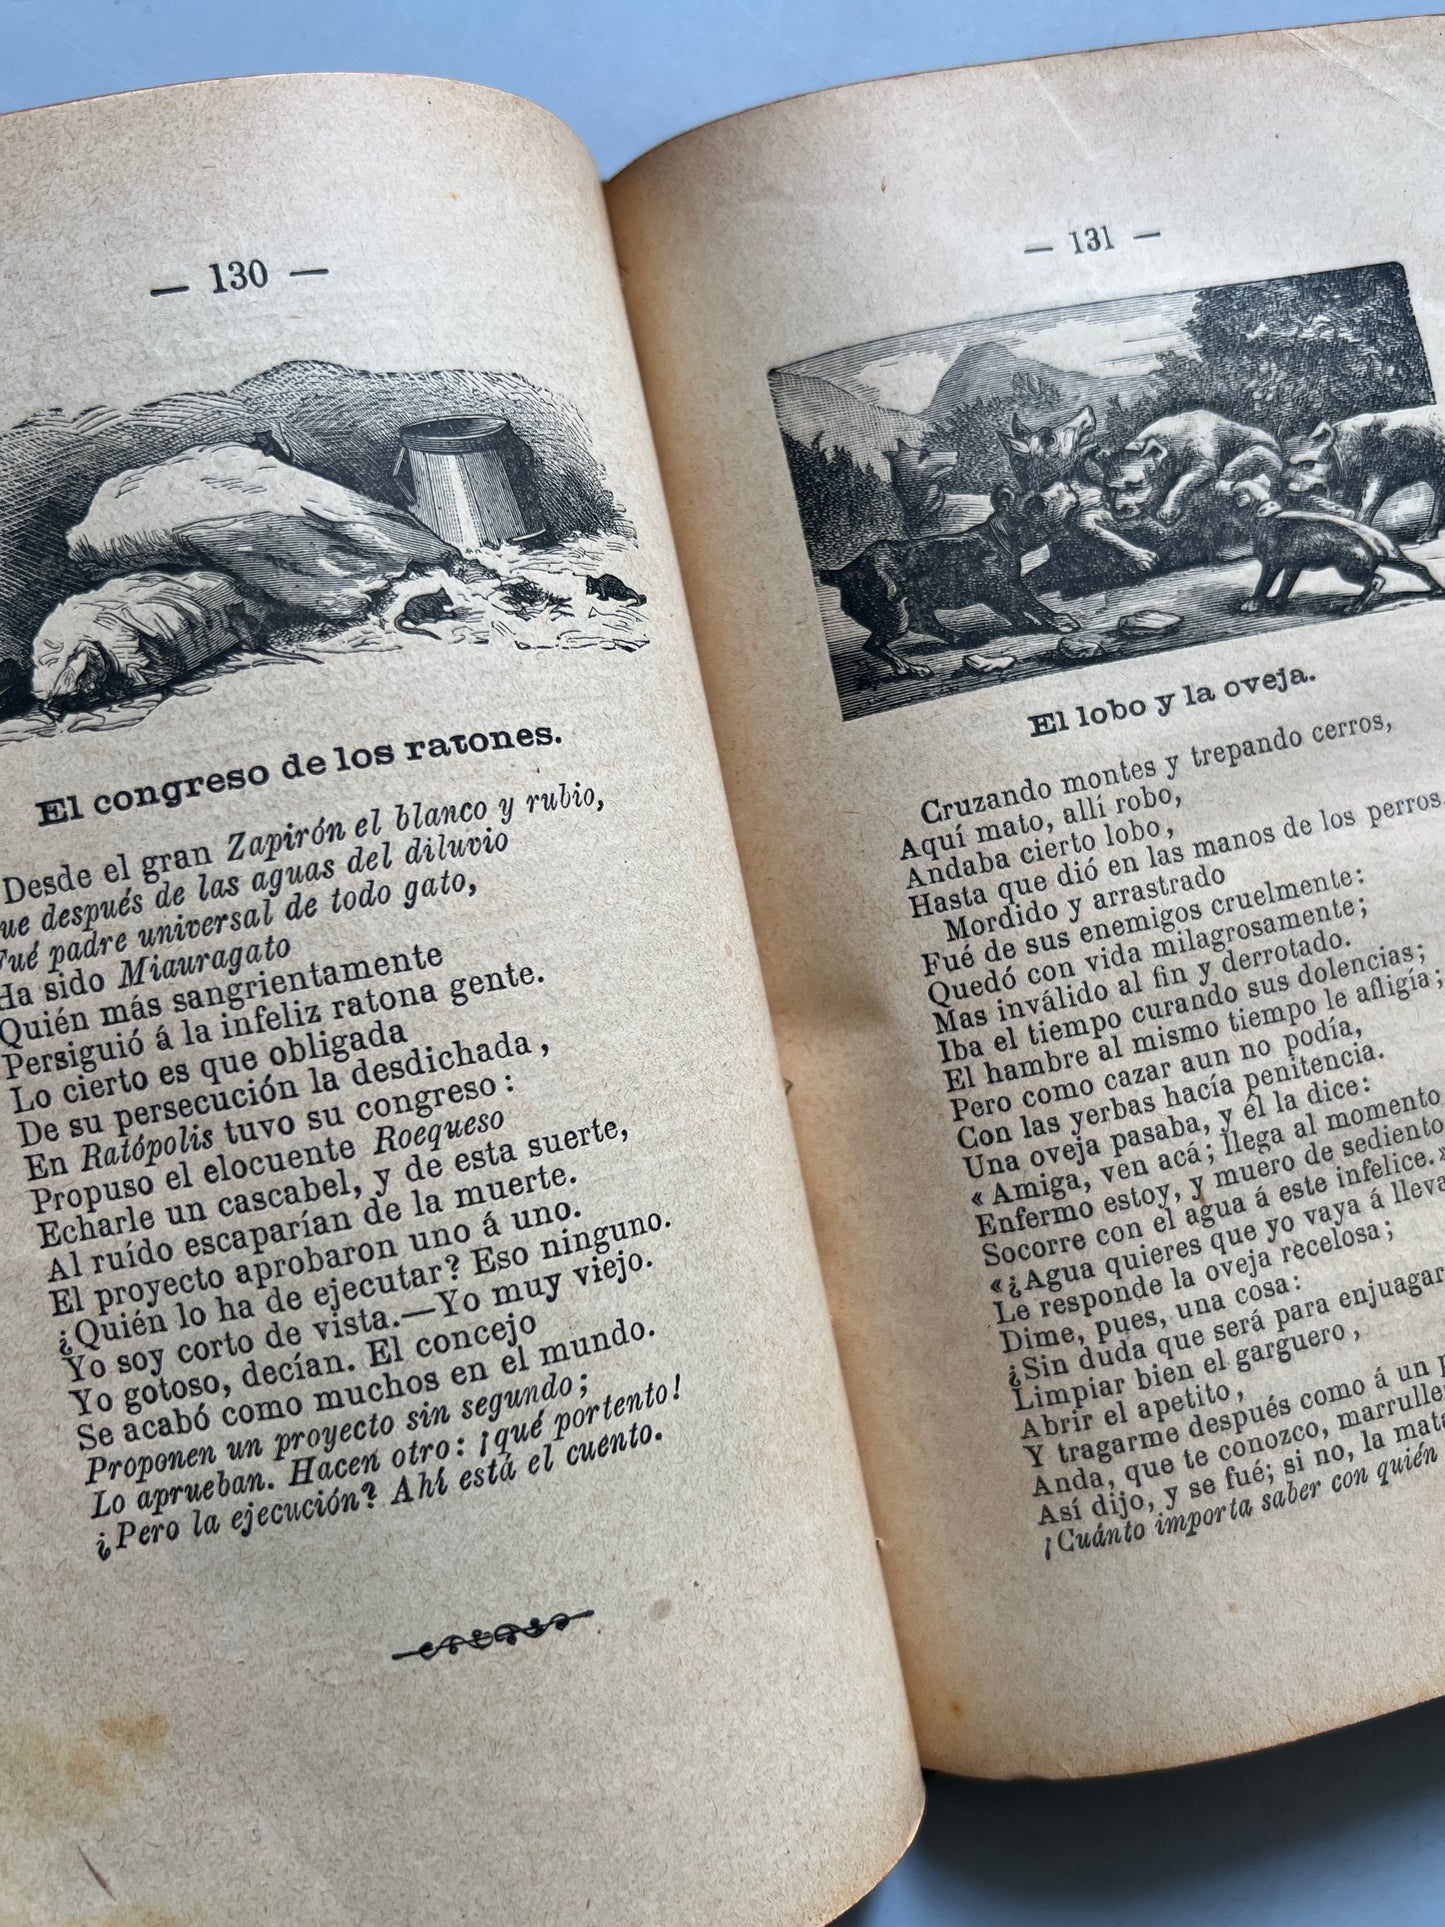 Fábulas de Esopo, Fedro, Samaniego é Iriarte - Faustino Paluzíe Impresor Editor, 1895